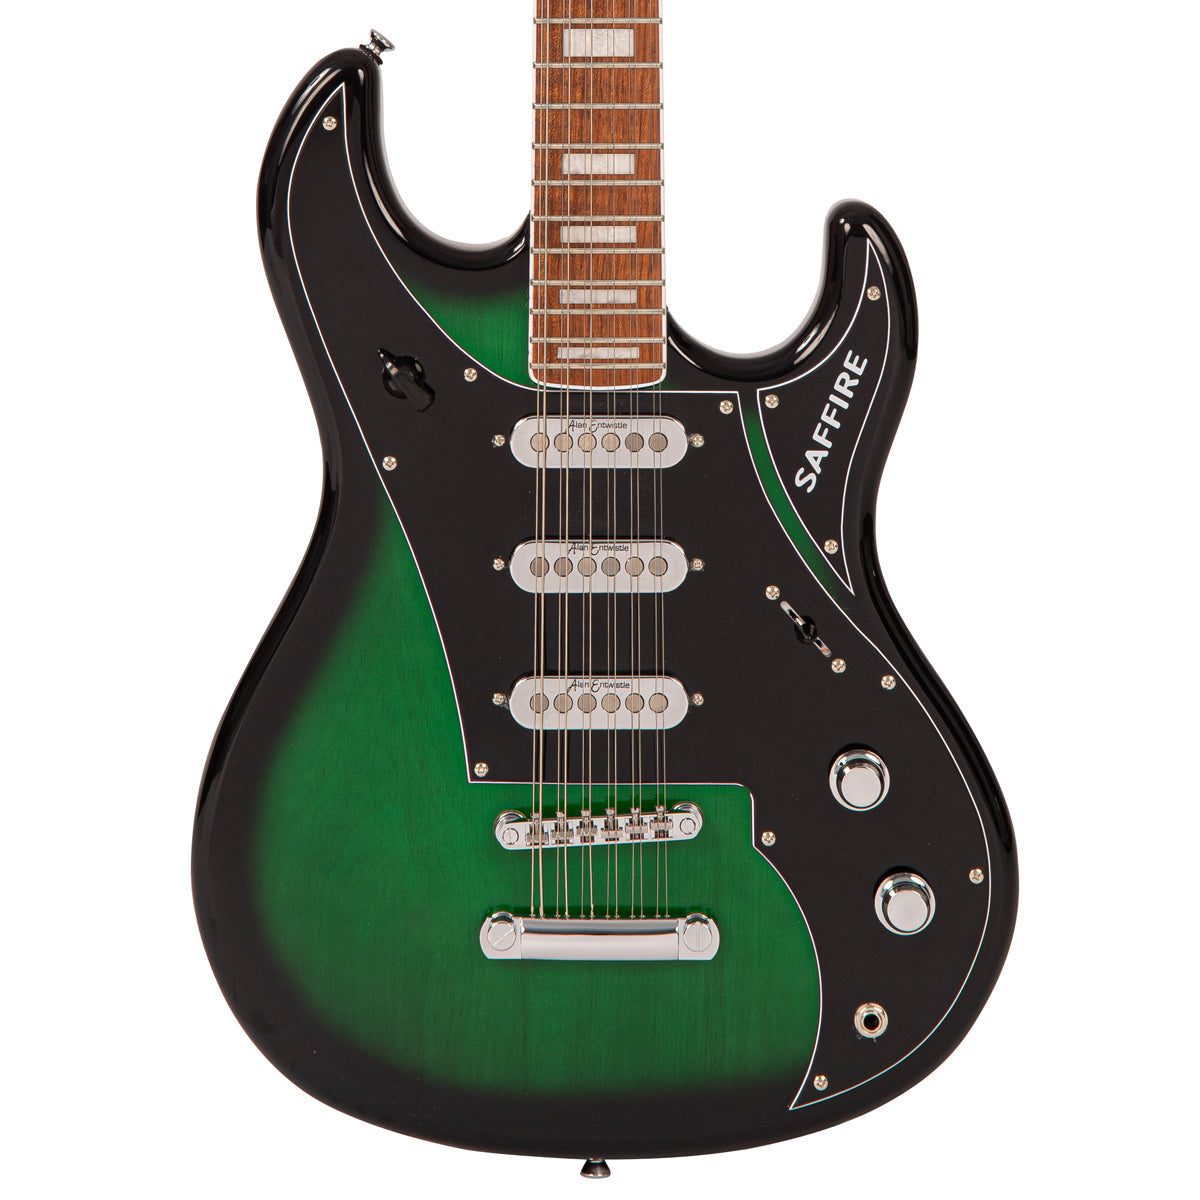 Rapier Saffire 12 String Electric Guitar ~ Greenburst, Electric Guitar for sale at Richards Guitars.